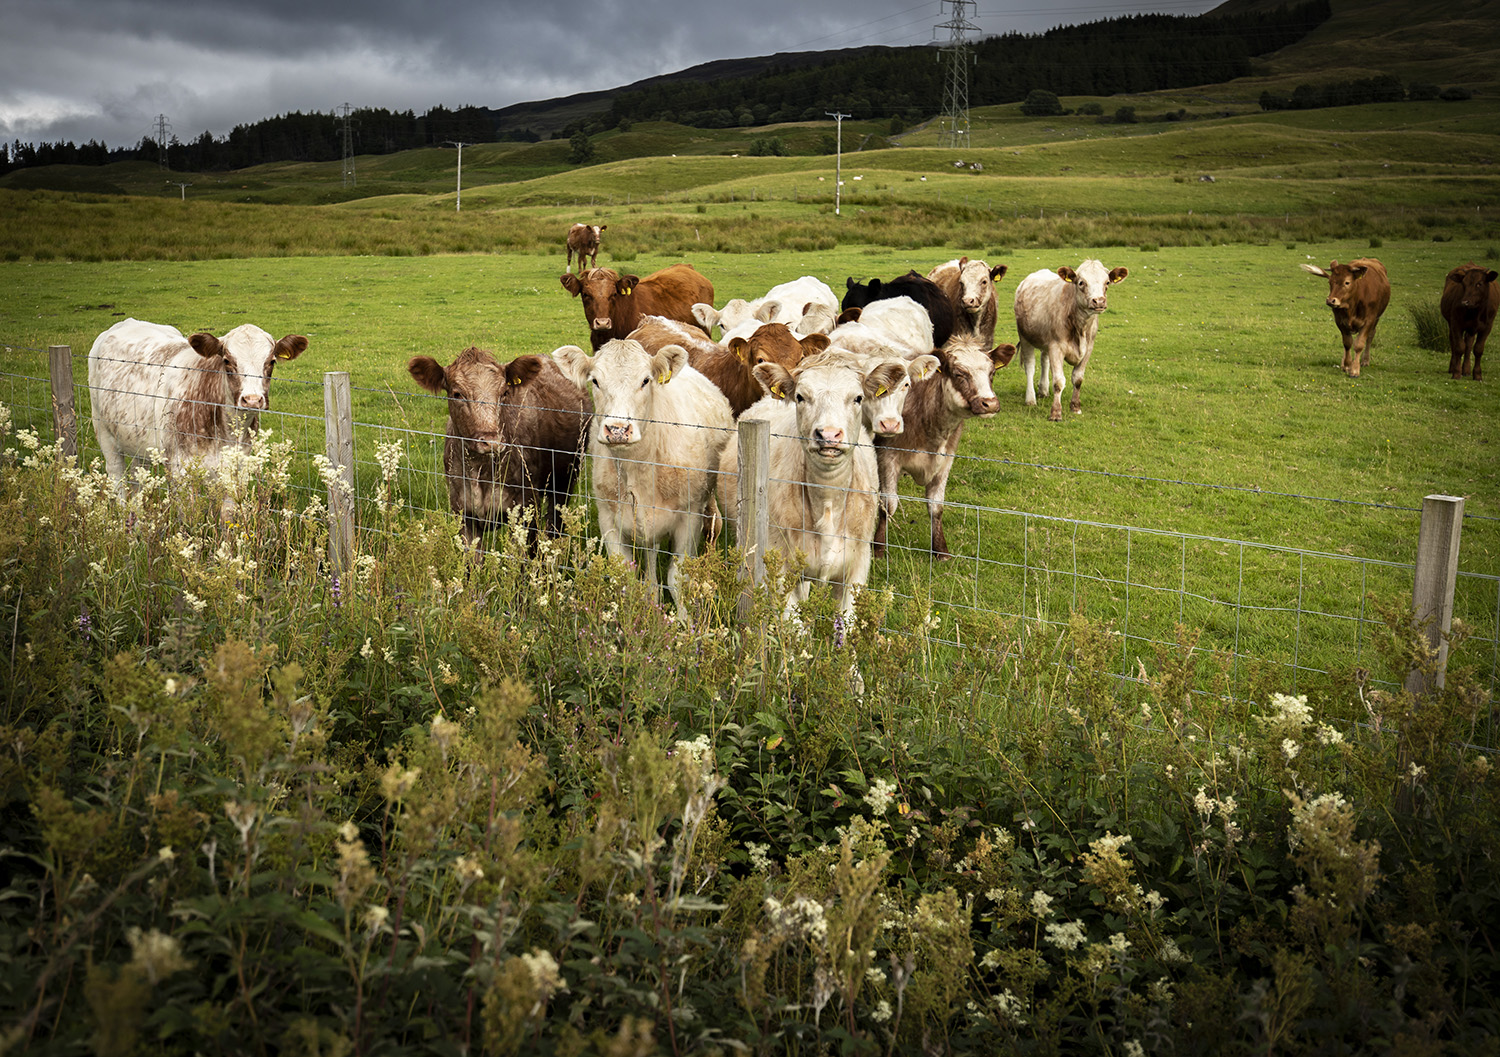 Cows in Scotland